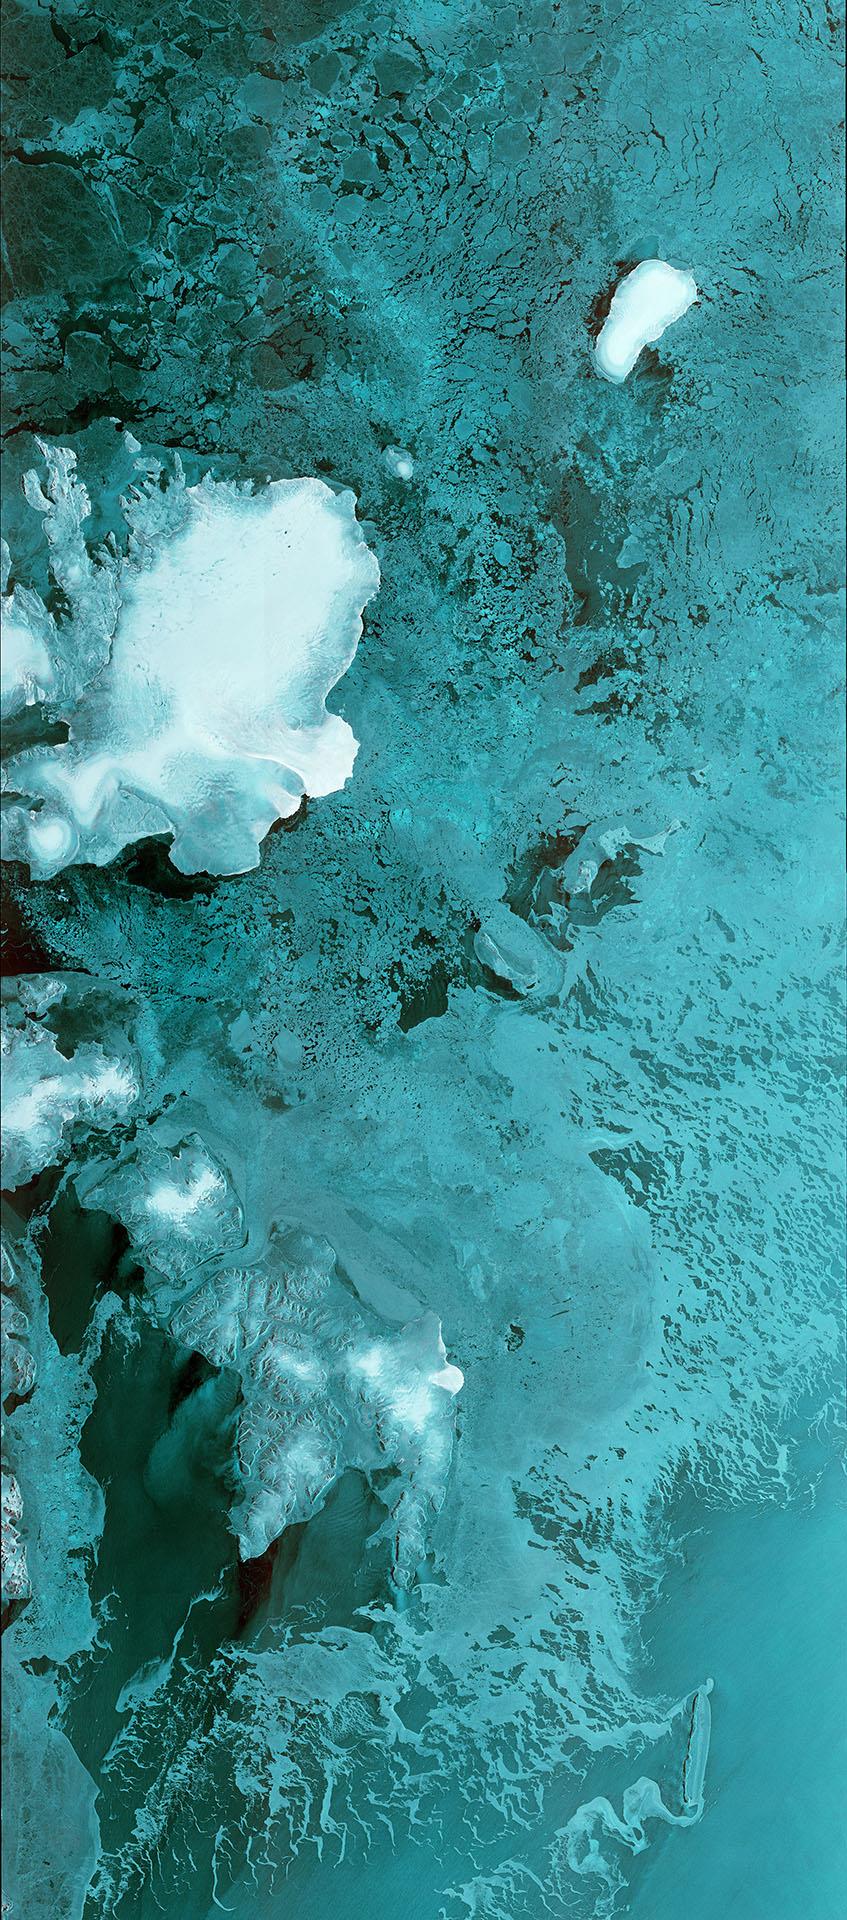 El satélite medioambiental Sentinel-1B envía su primera imagen